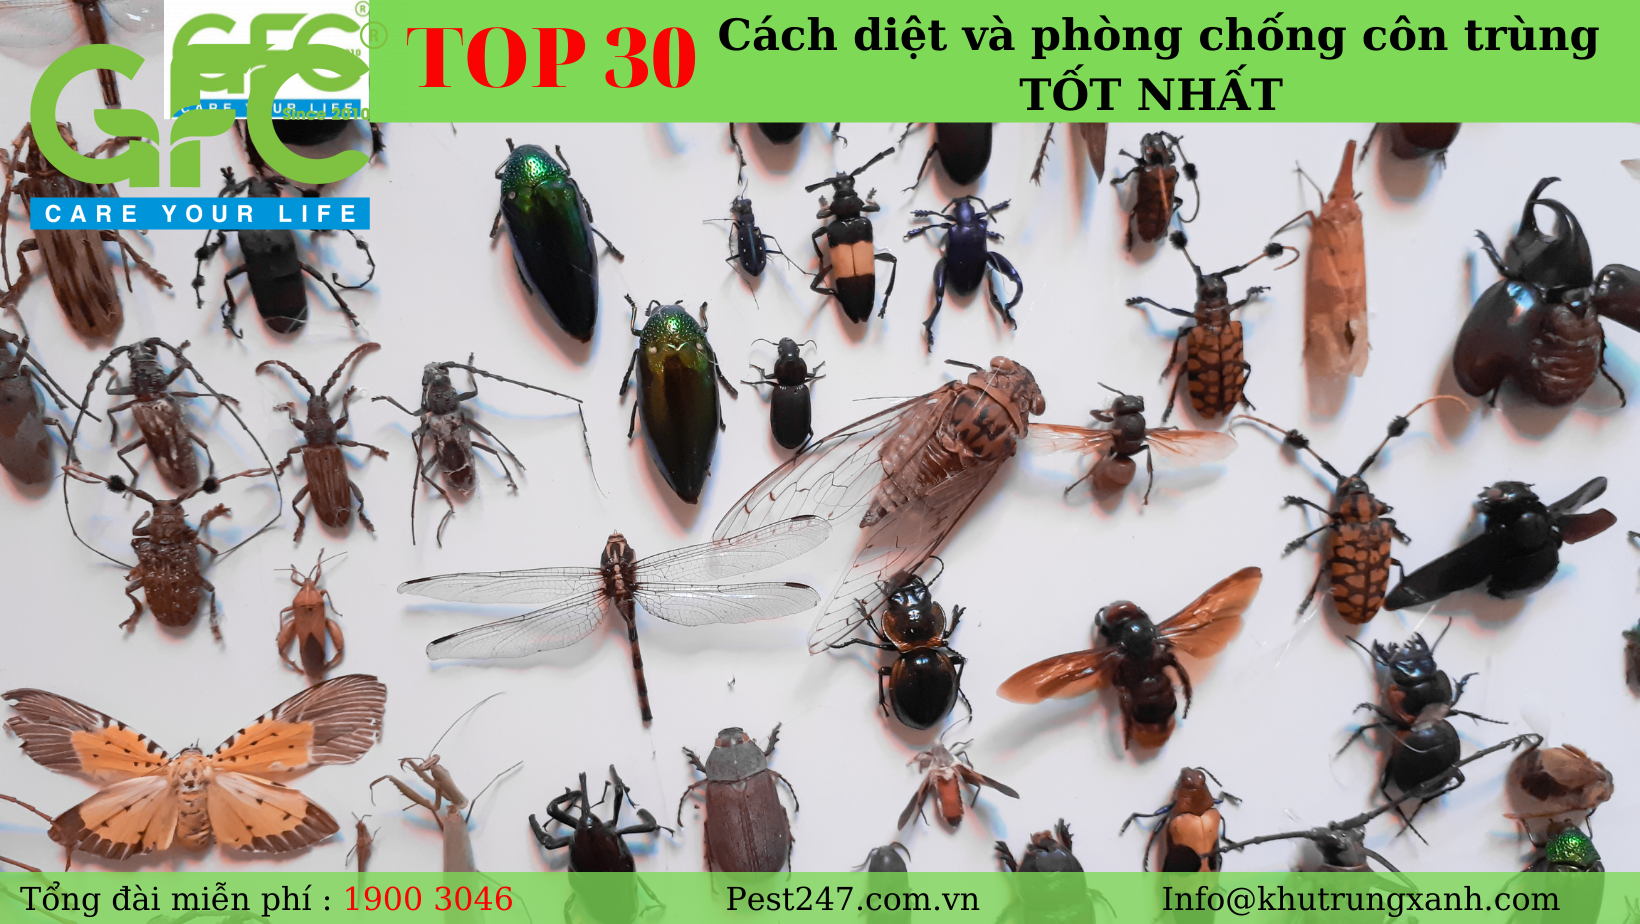 TOP 30 cách diệt và phòng chống côn trùng TỐT NHẤT - Lưu lại ngay